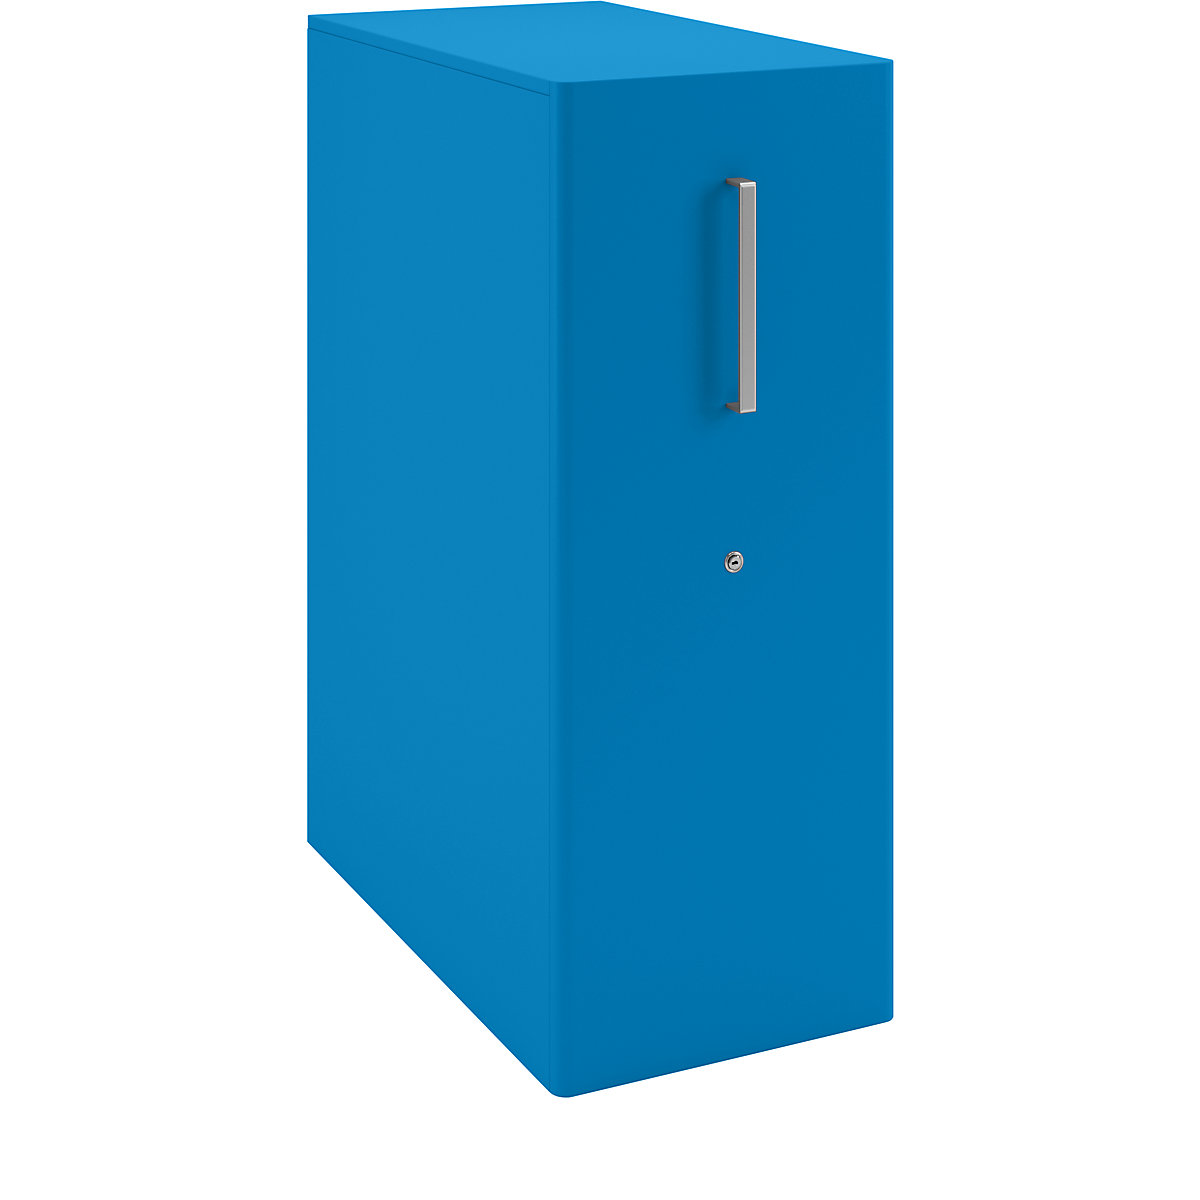 Assistentiemeubel Tower™ 4, met bovenblad en 1 prikbord – BISLEY, linksstaand, 1 legbord, blauw-25